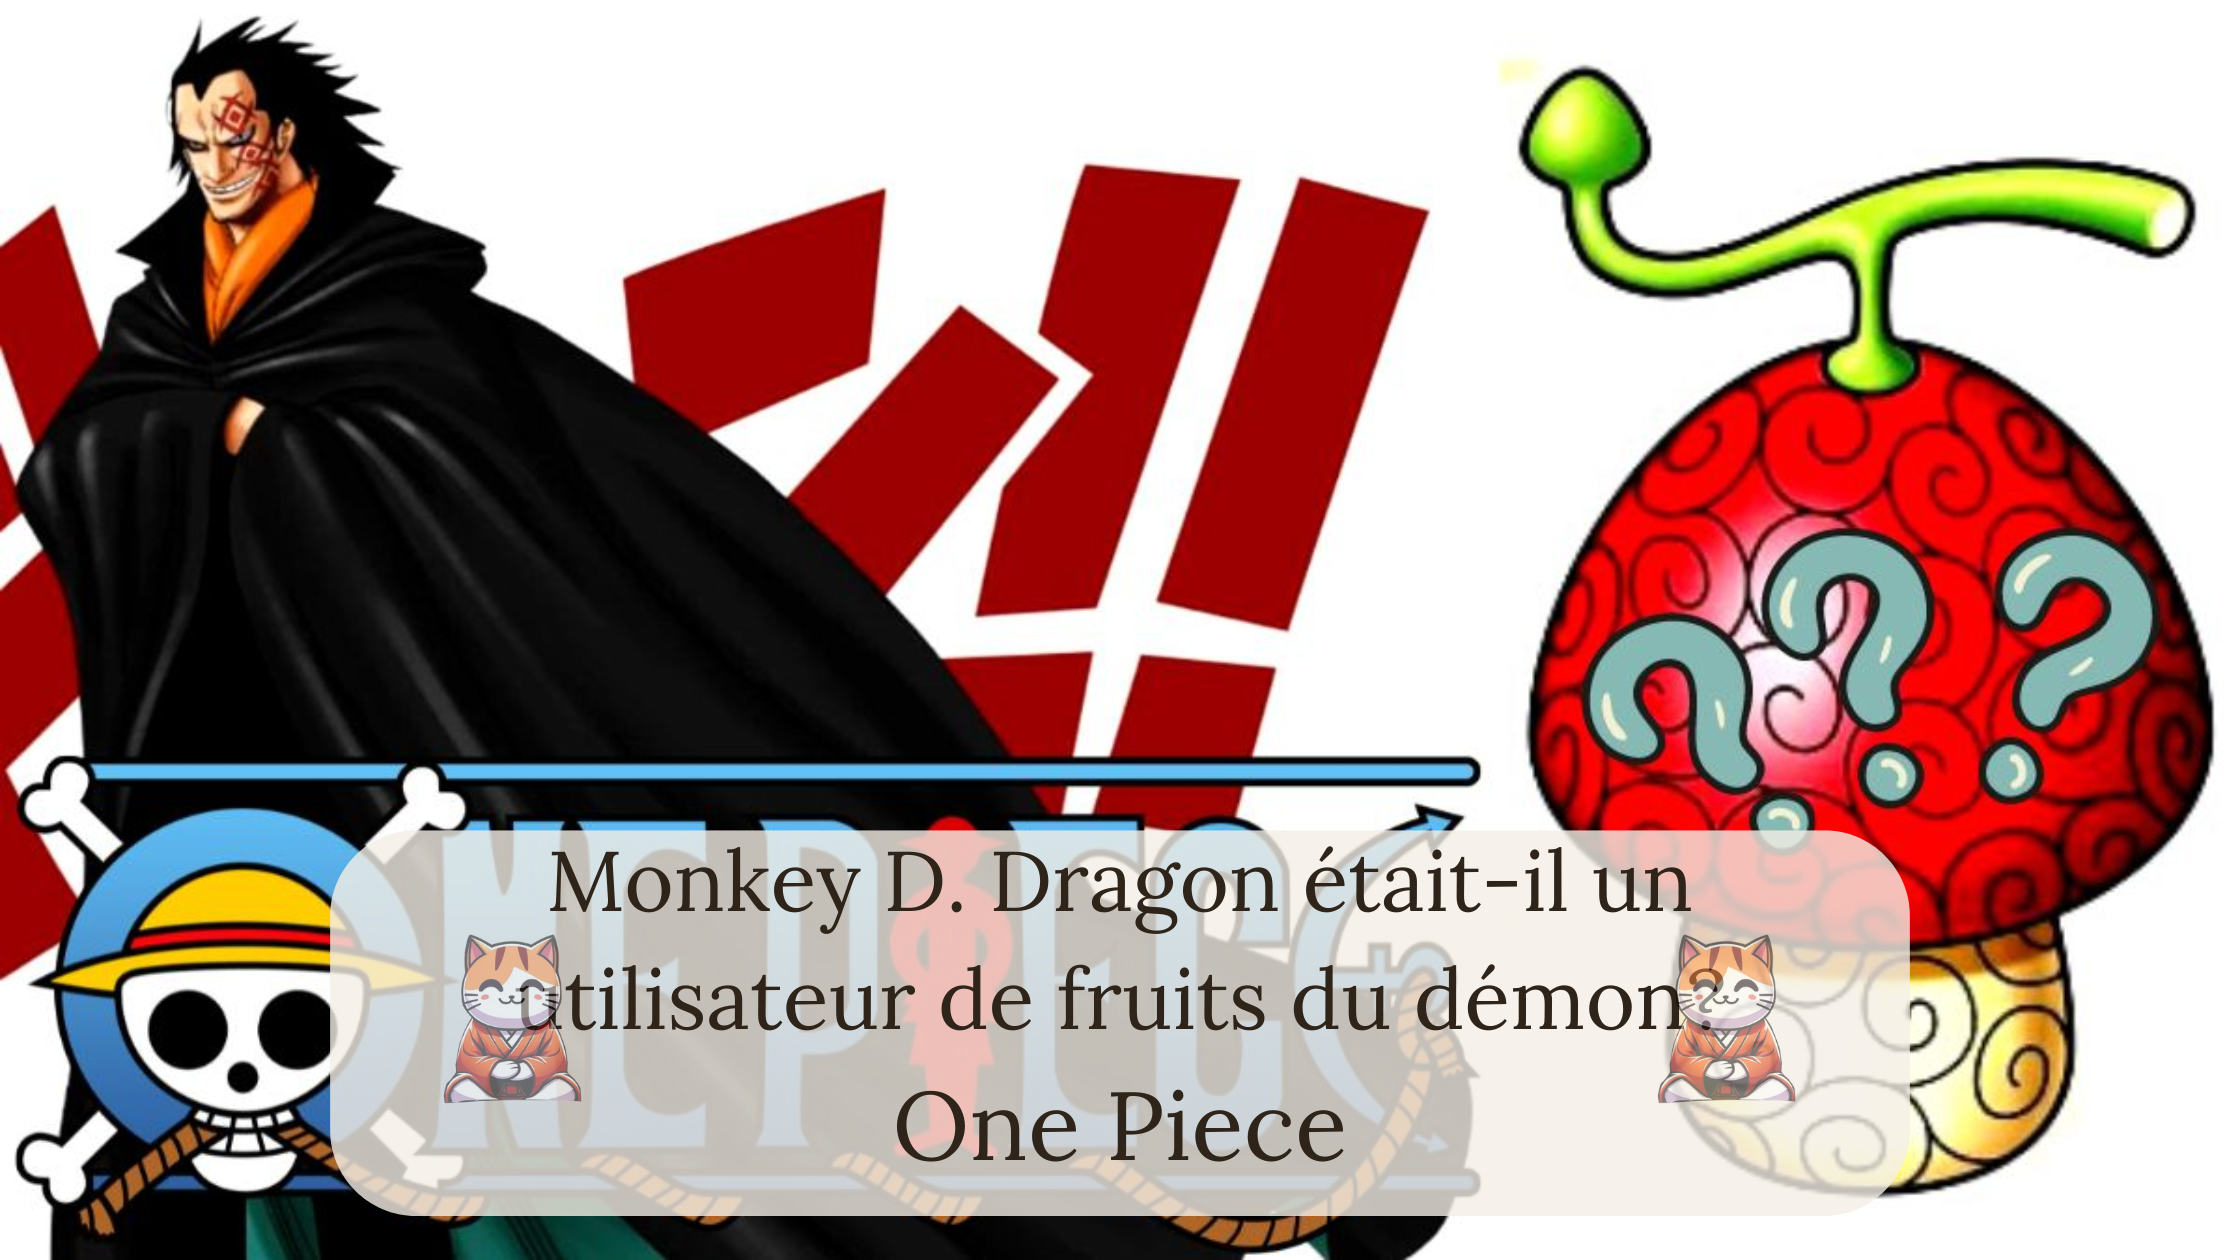 Monkey D. Dragon était-il un utilisateur de fruits du démon?